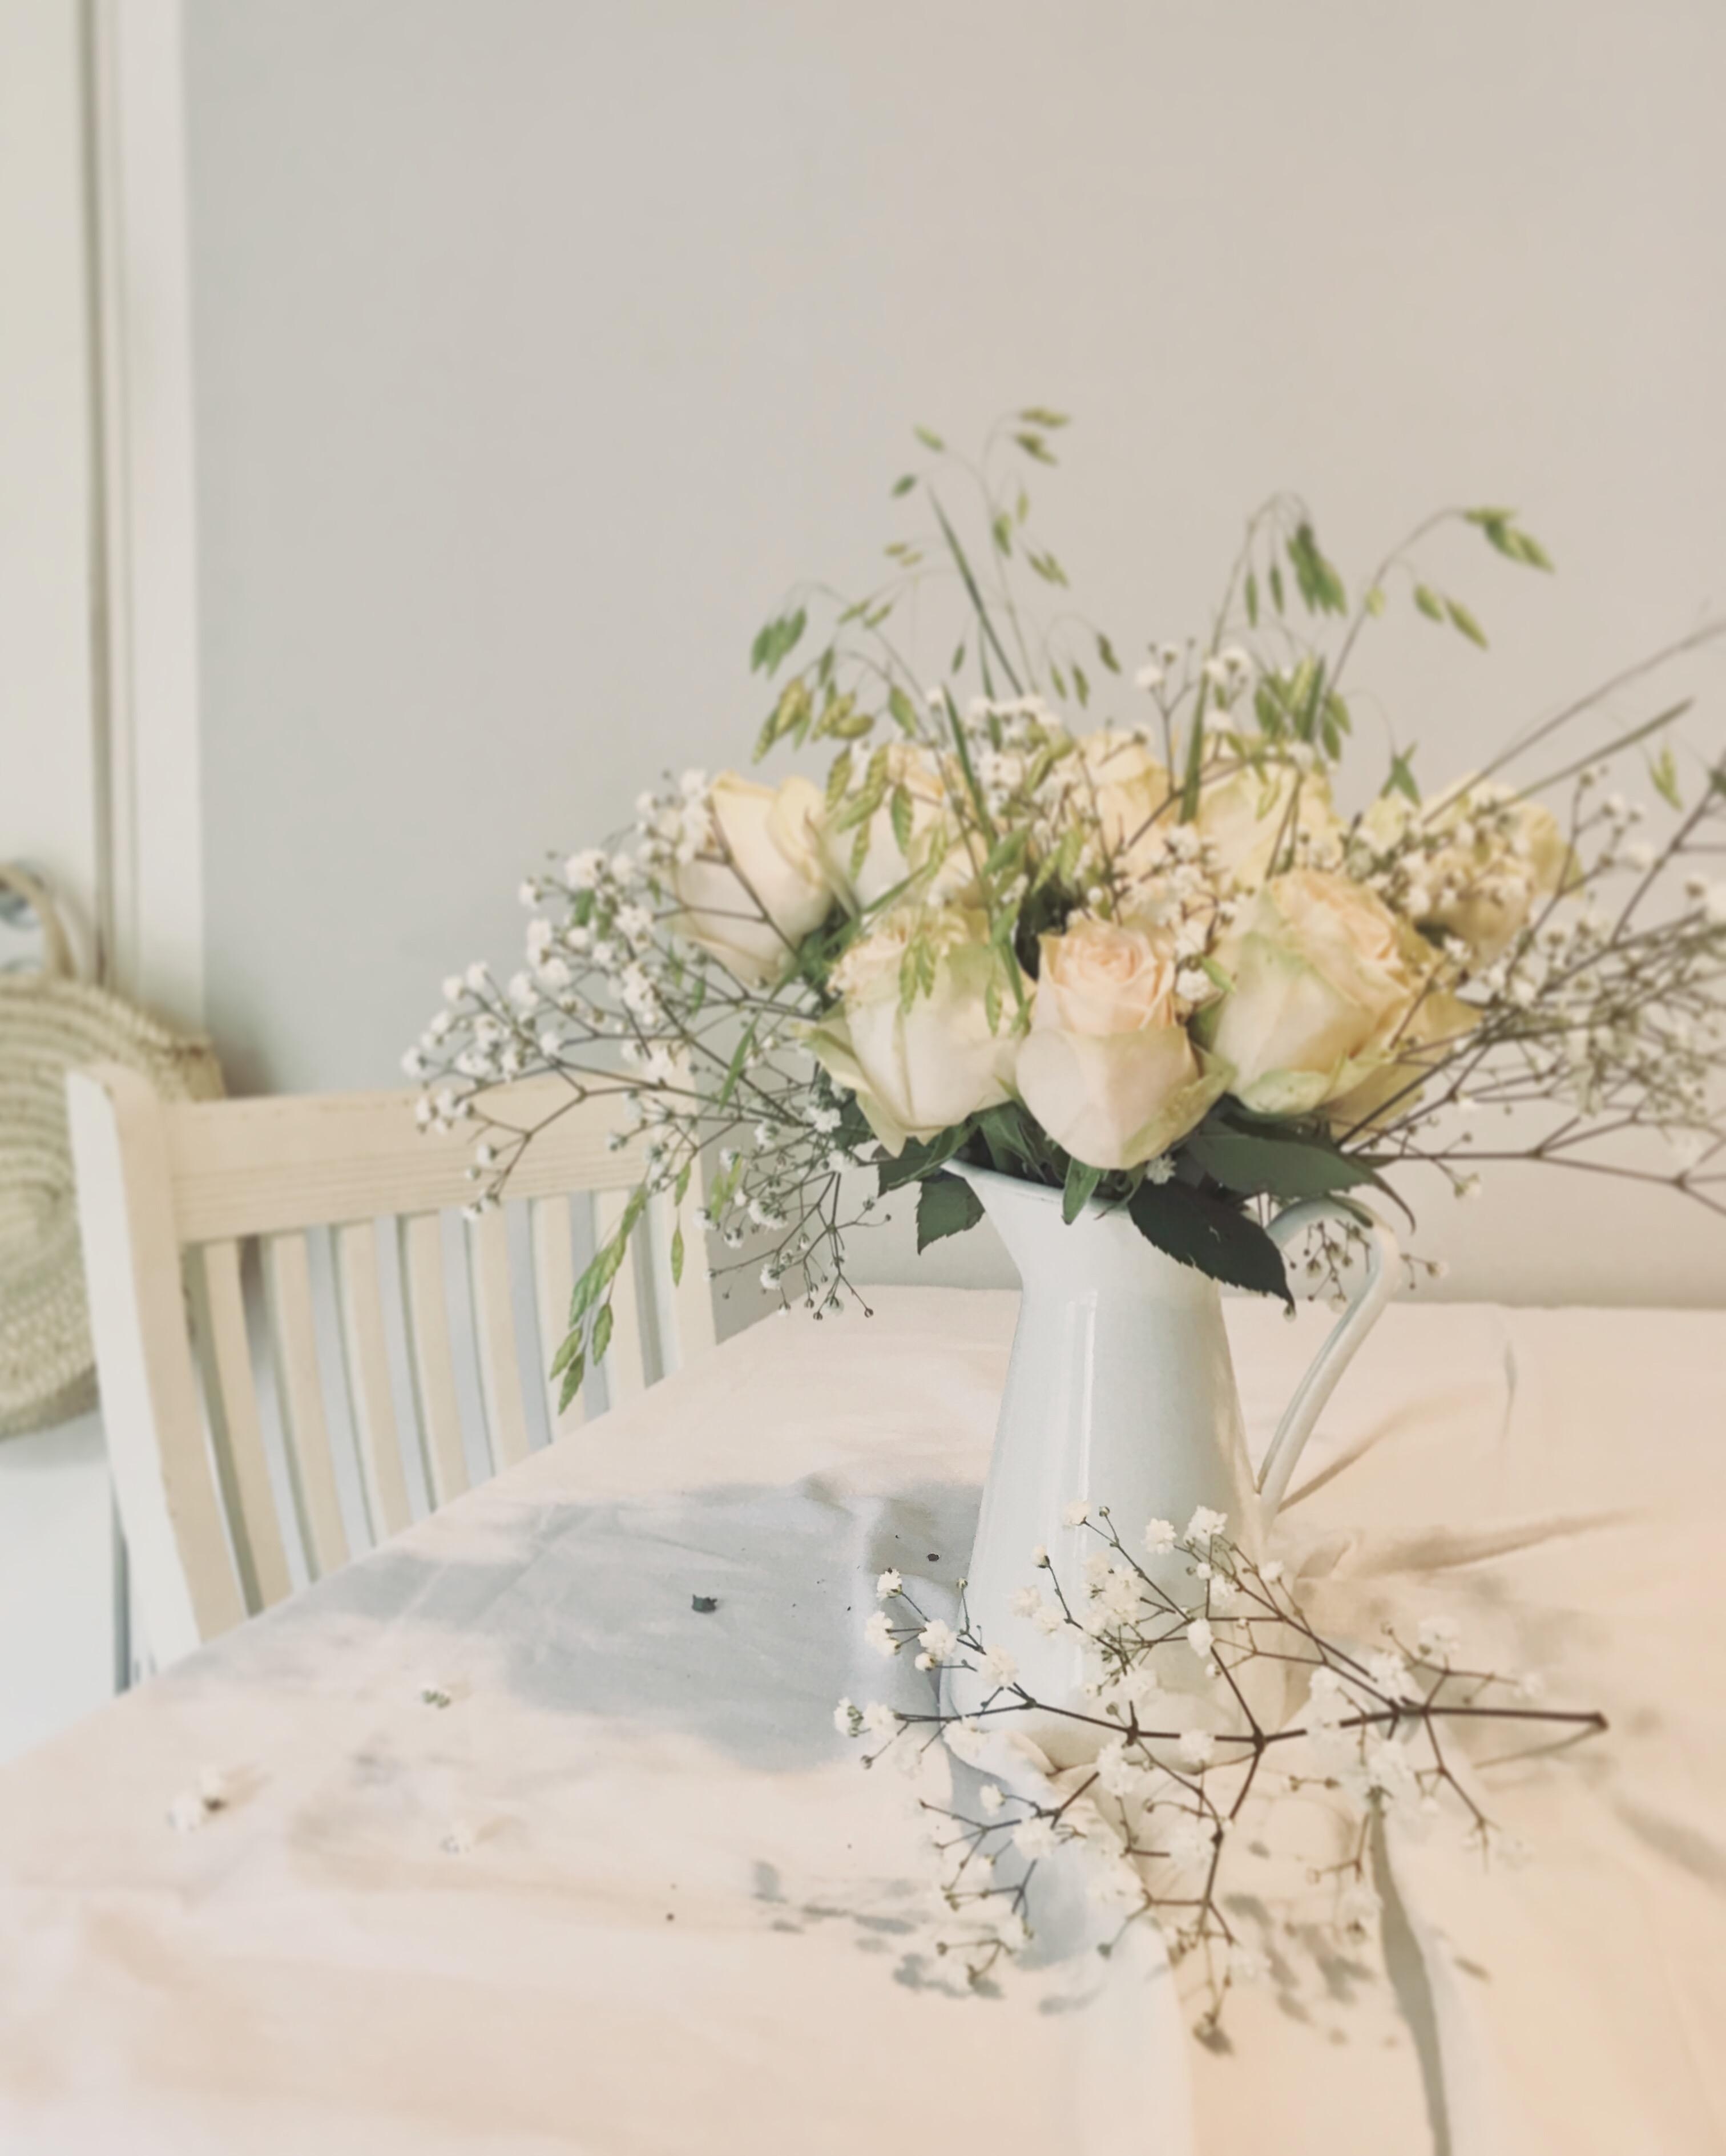 Simple, but oh! so beautiful #freshflowers#blumen#bouquet#couchstyle#interior#couchliebt#blumenliebe